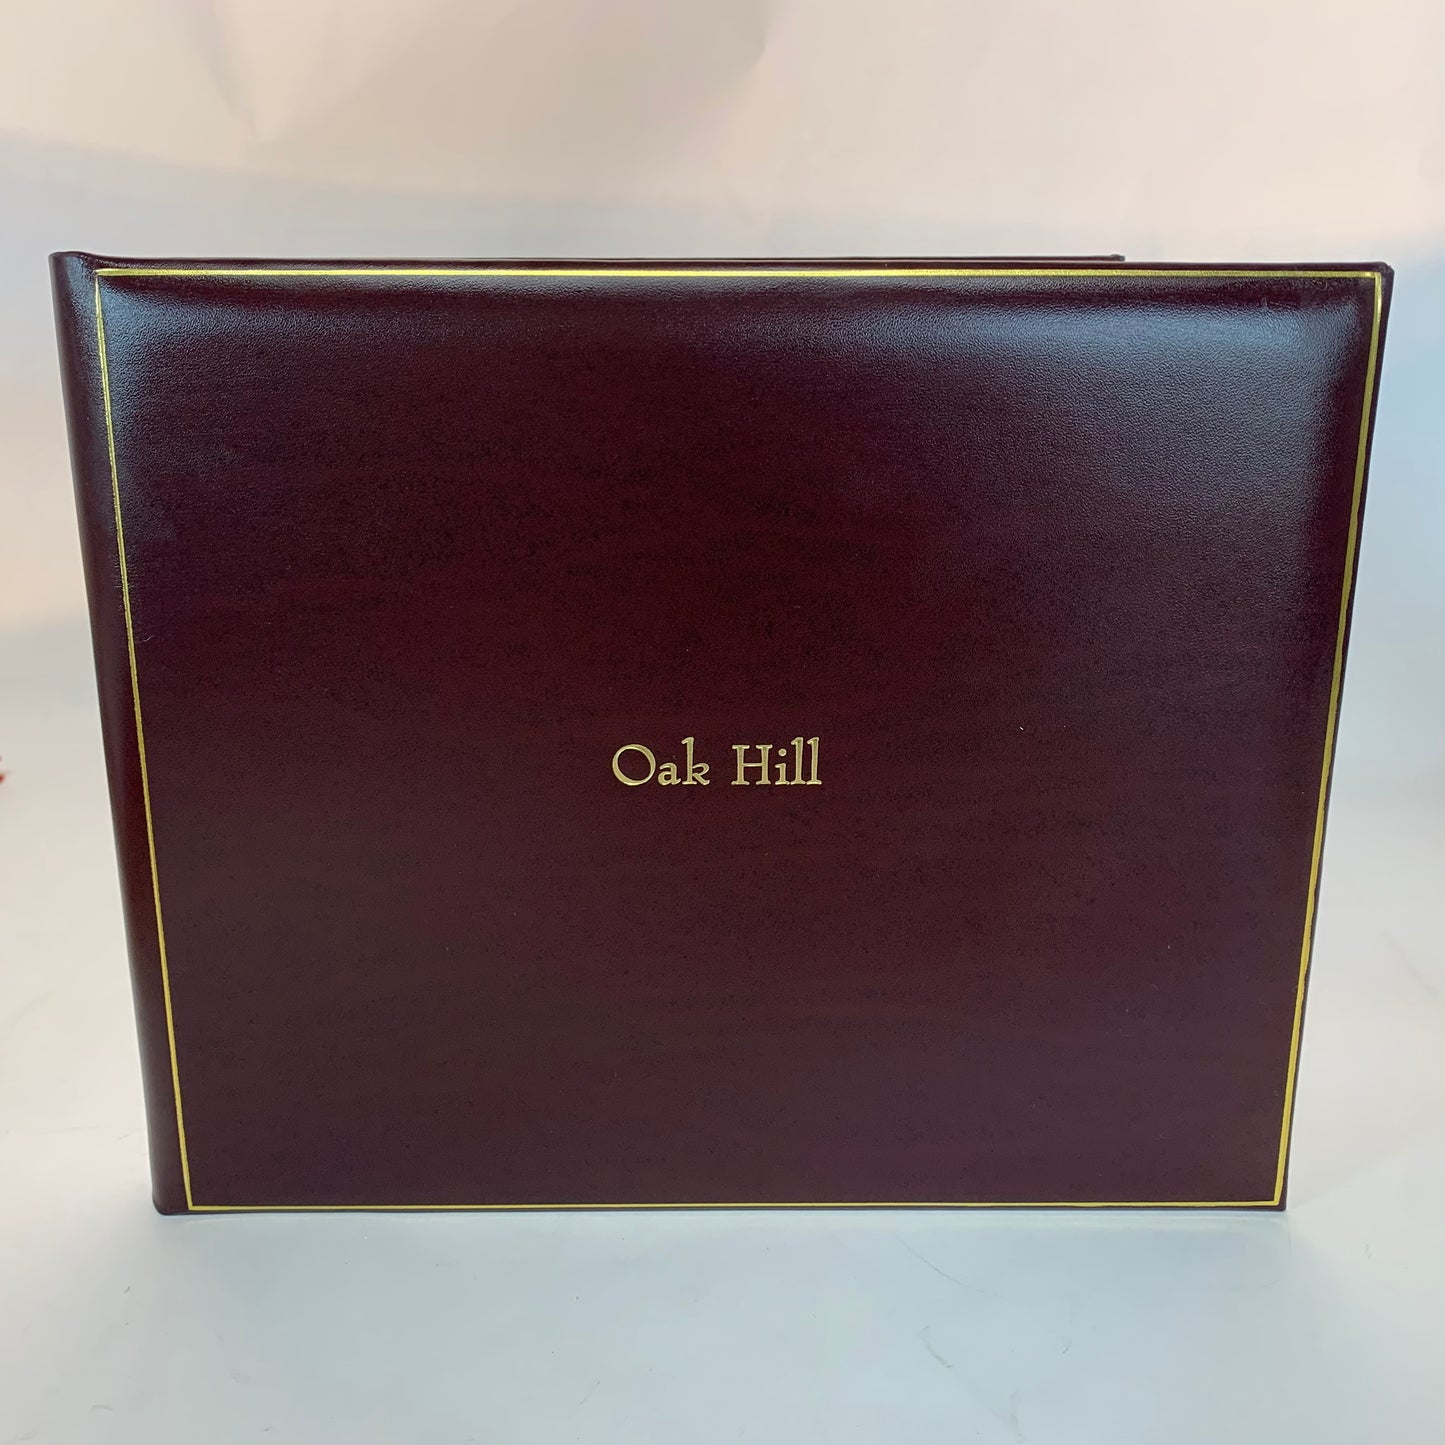 Proof | Oak Hill Guest Book | Gold Stamp Personalization